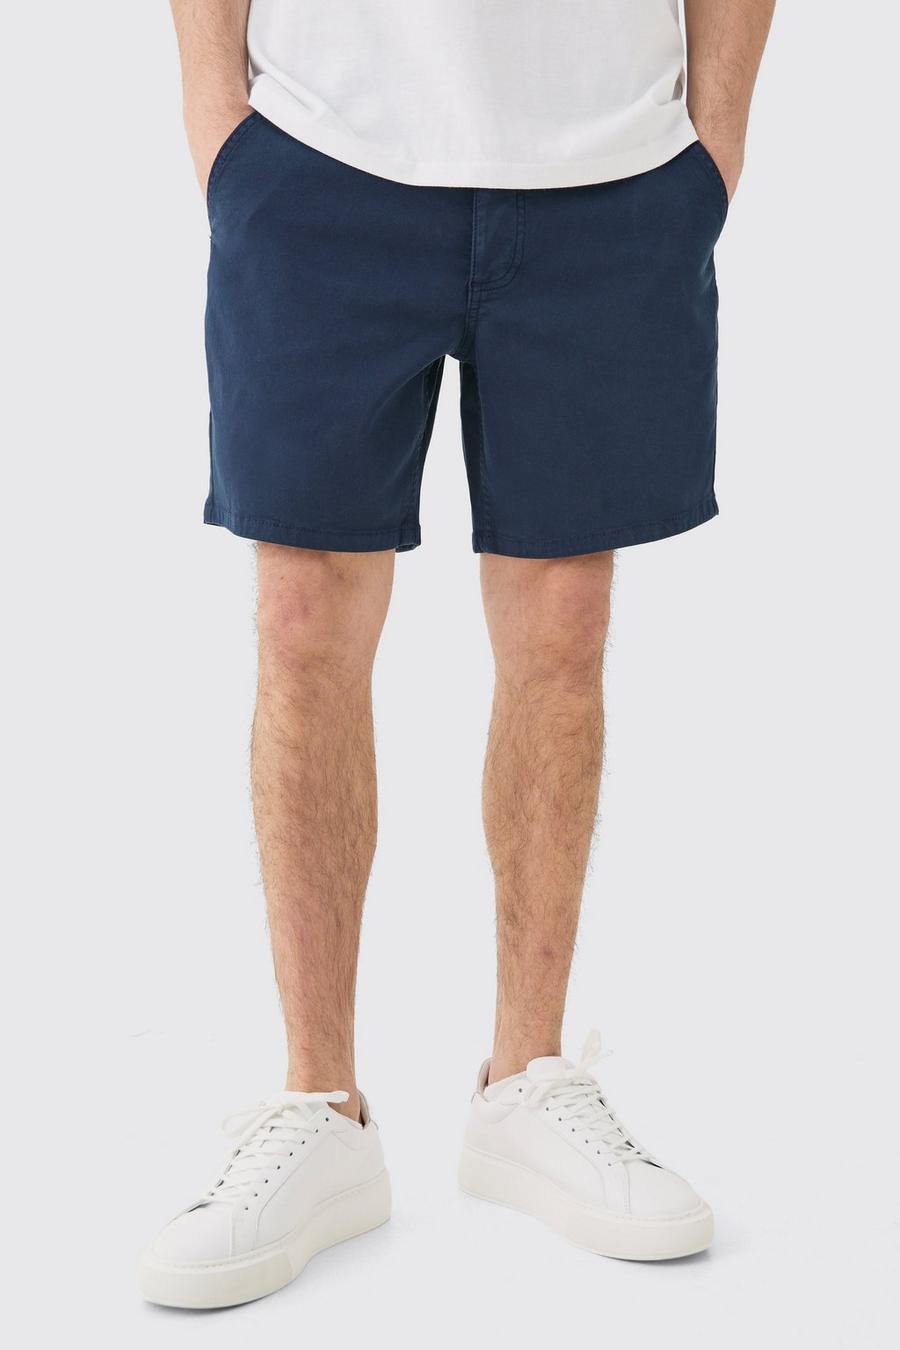 Pantalón corto chino ajustado, Navy